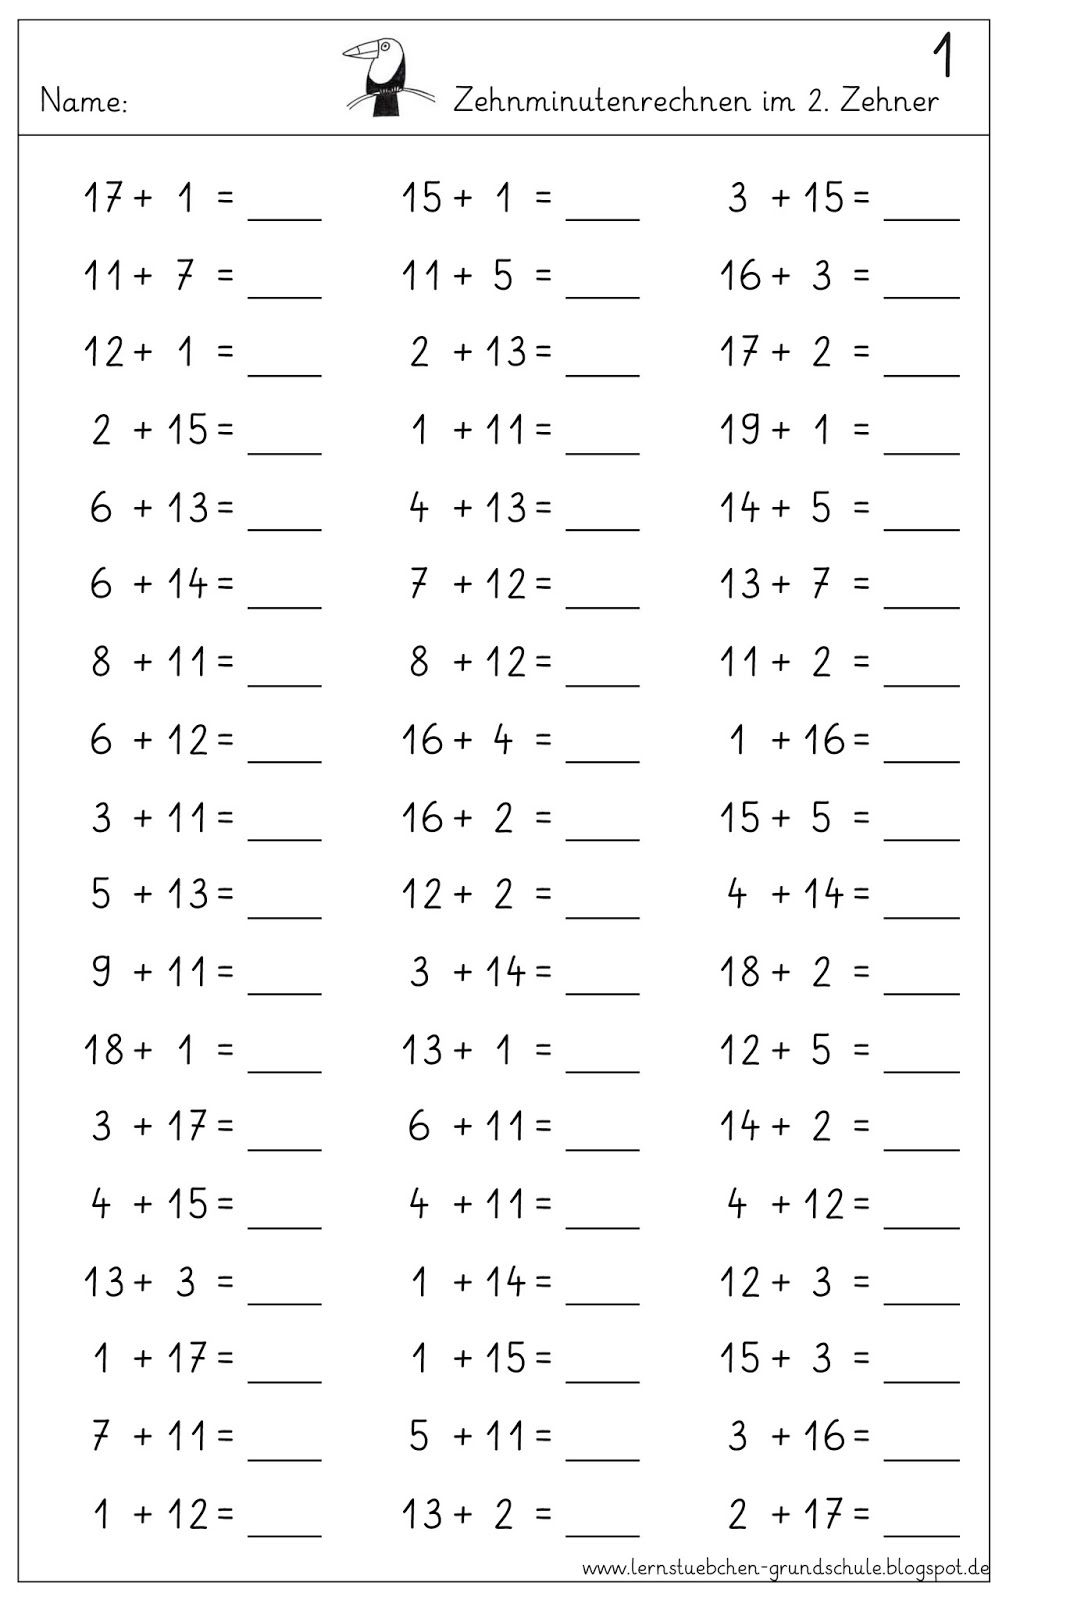 30 Mathe Arbeitsblätter Klasse 1 Zum Ausdrucken Kostenlos bestimmt für Rechenaufgaben 4 Klasse Zum Ausdrucken